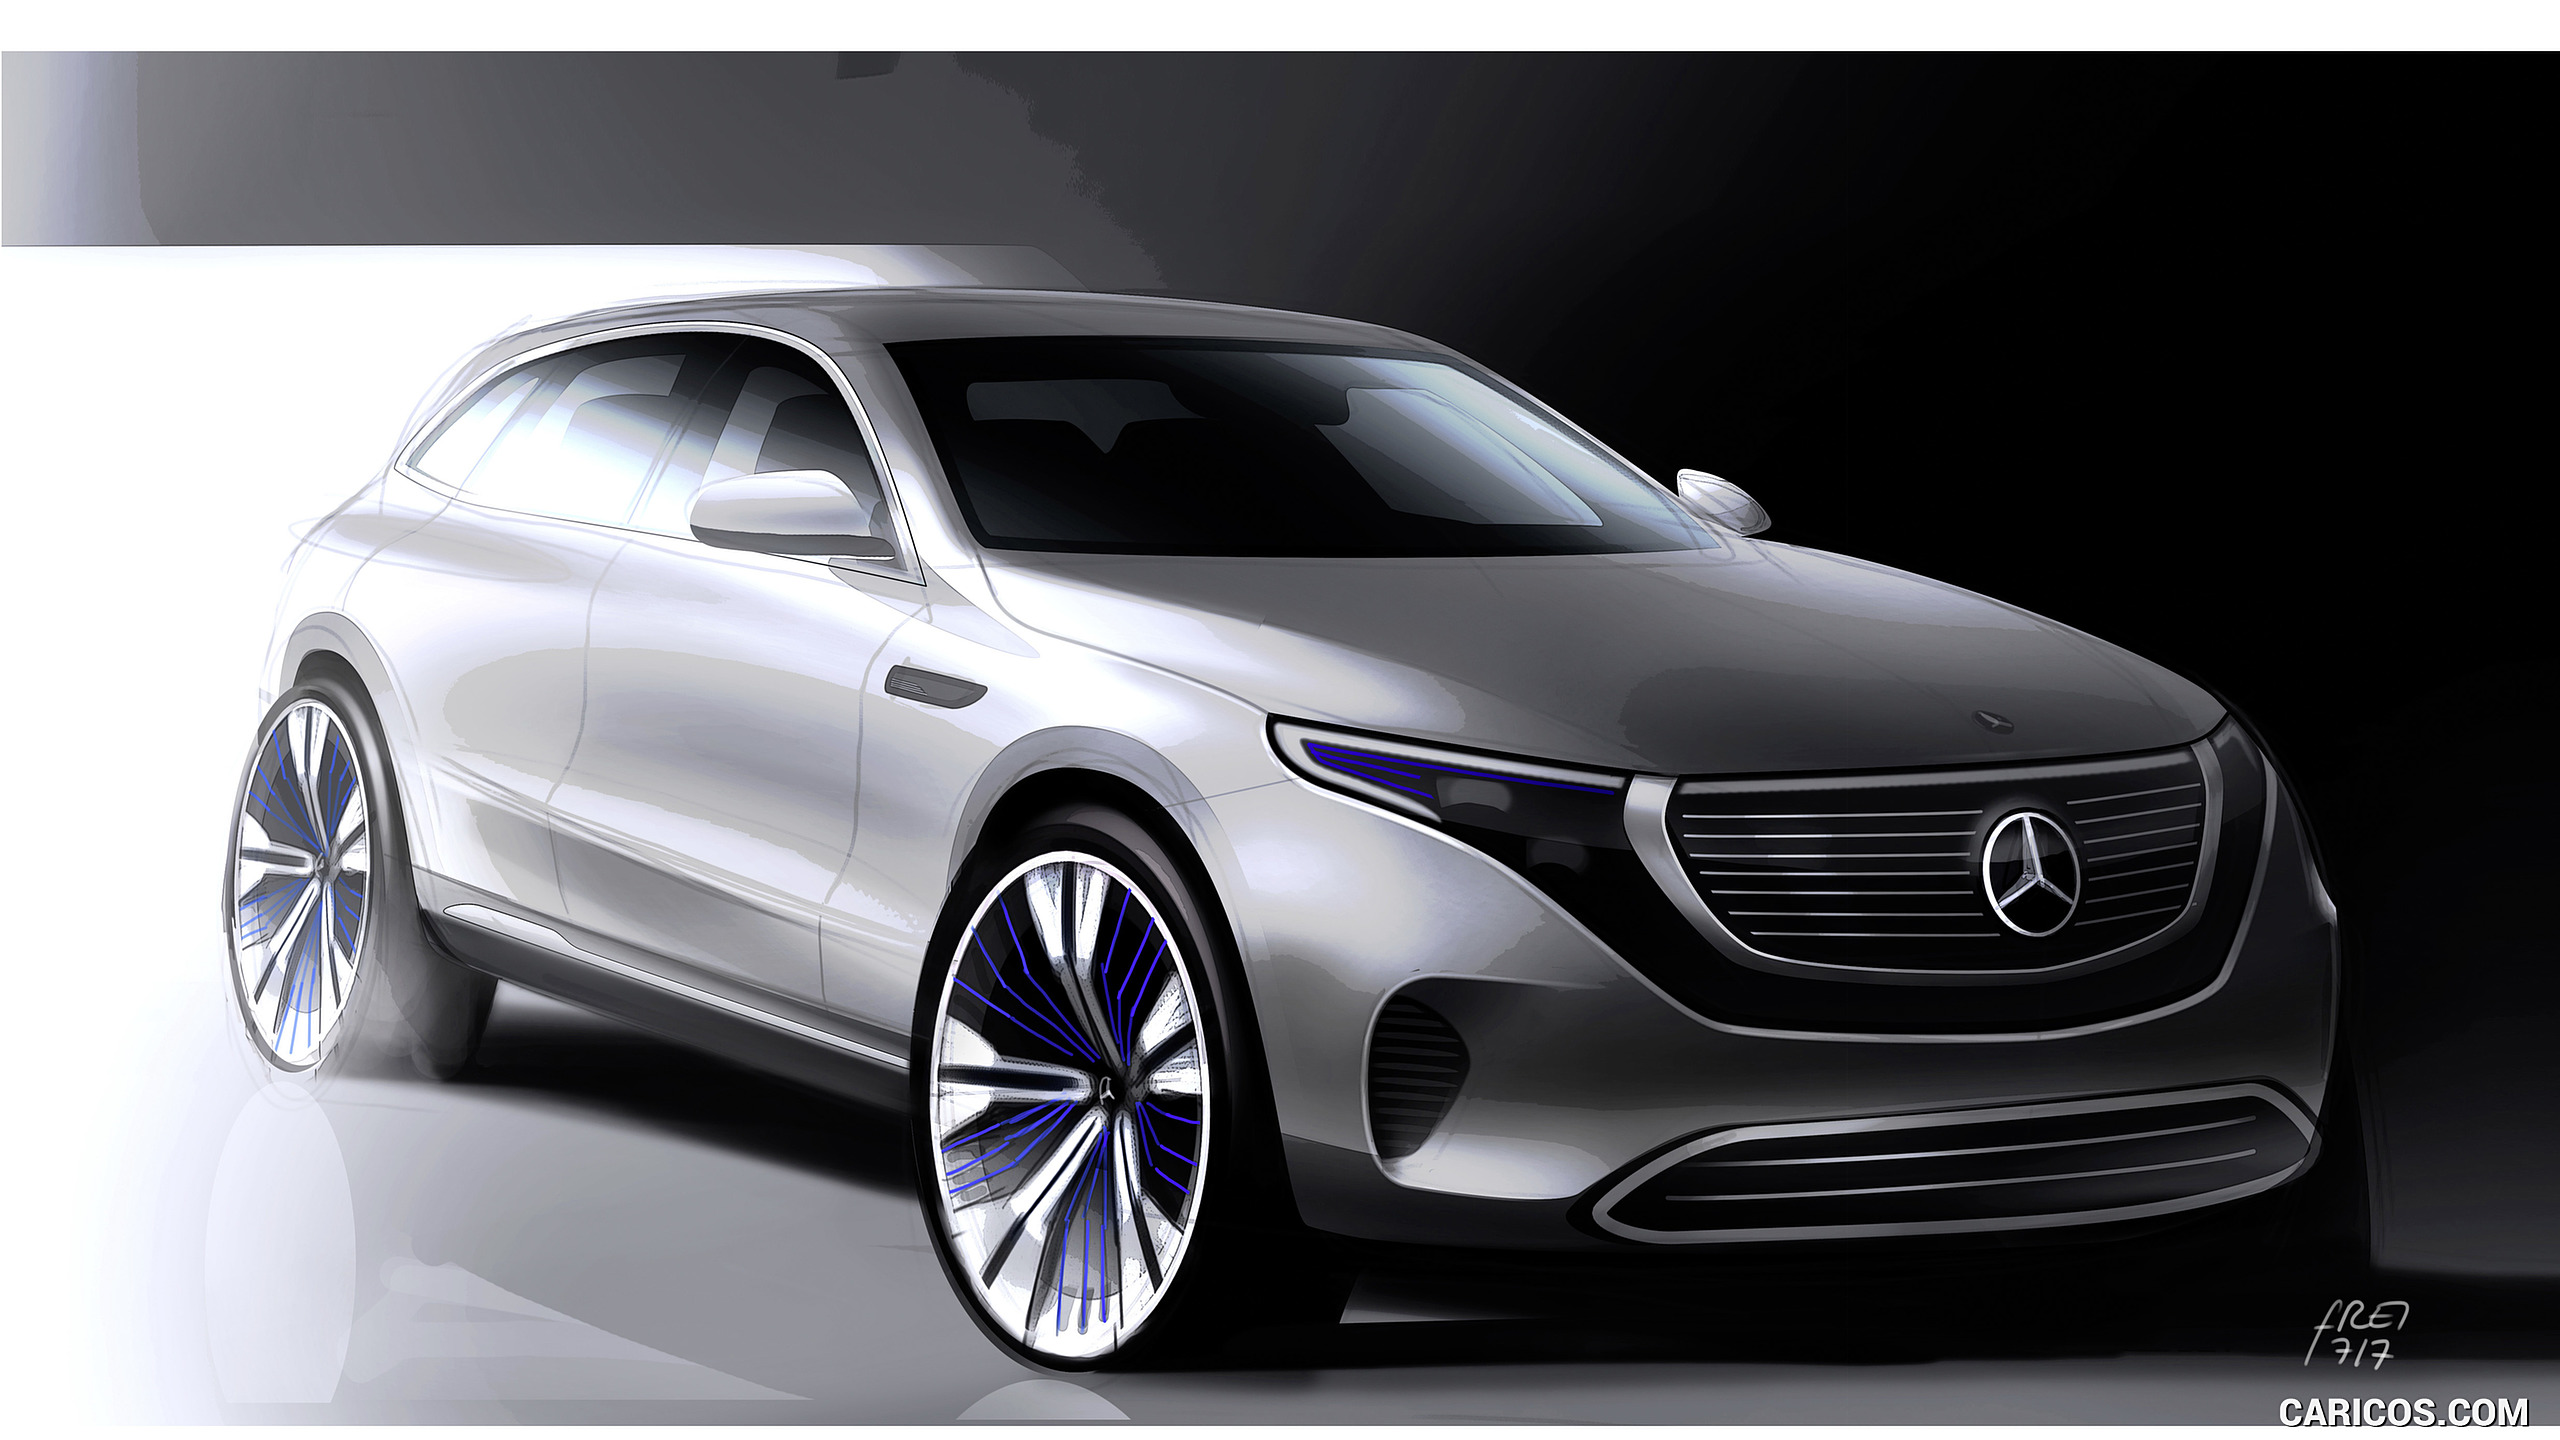 2020 Mercedes-Benz EQC - Design Sketch, #98 of 398